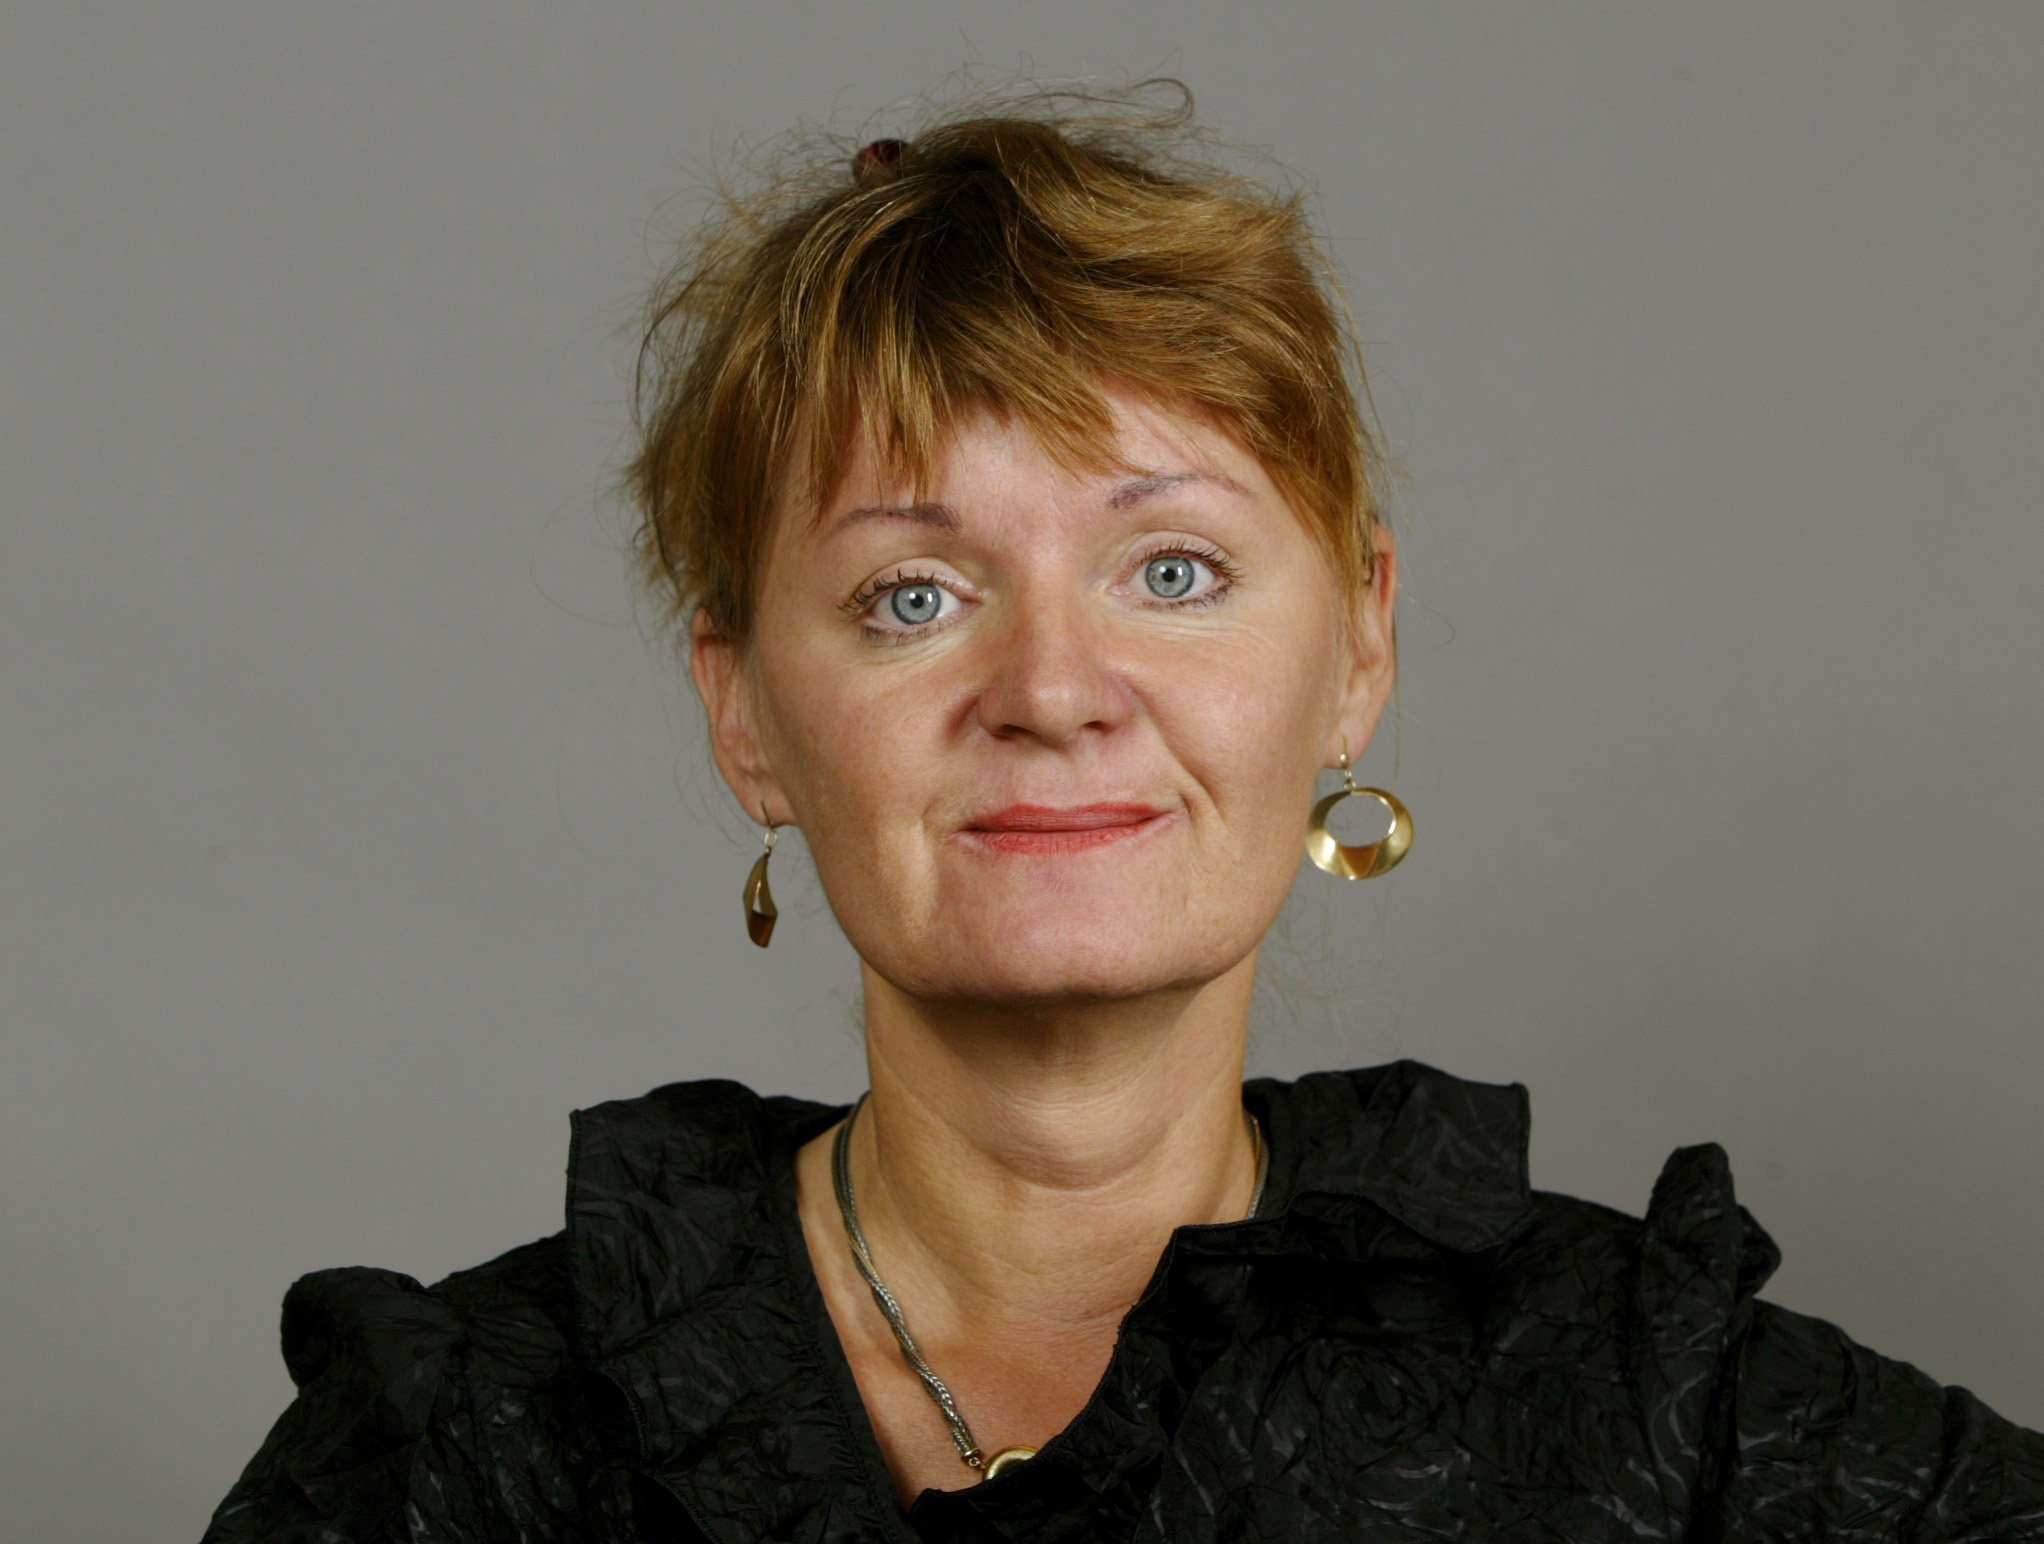 Feminism, Riksdagsvalet 2010, Carina Hägg, Gudrun Schyman, Sverigedemokraterna, Feministiskt initiativ, Alliansen